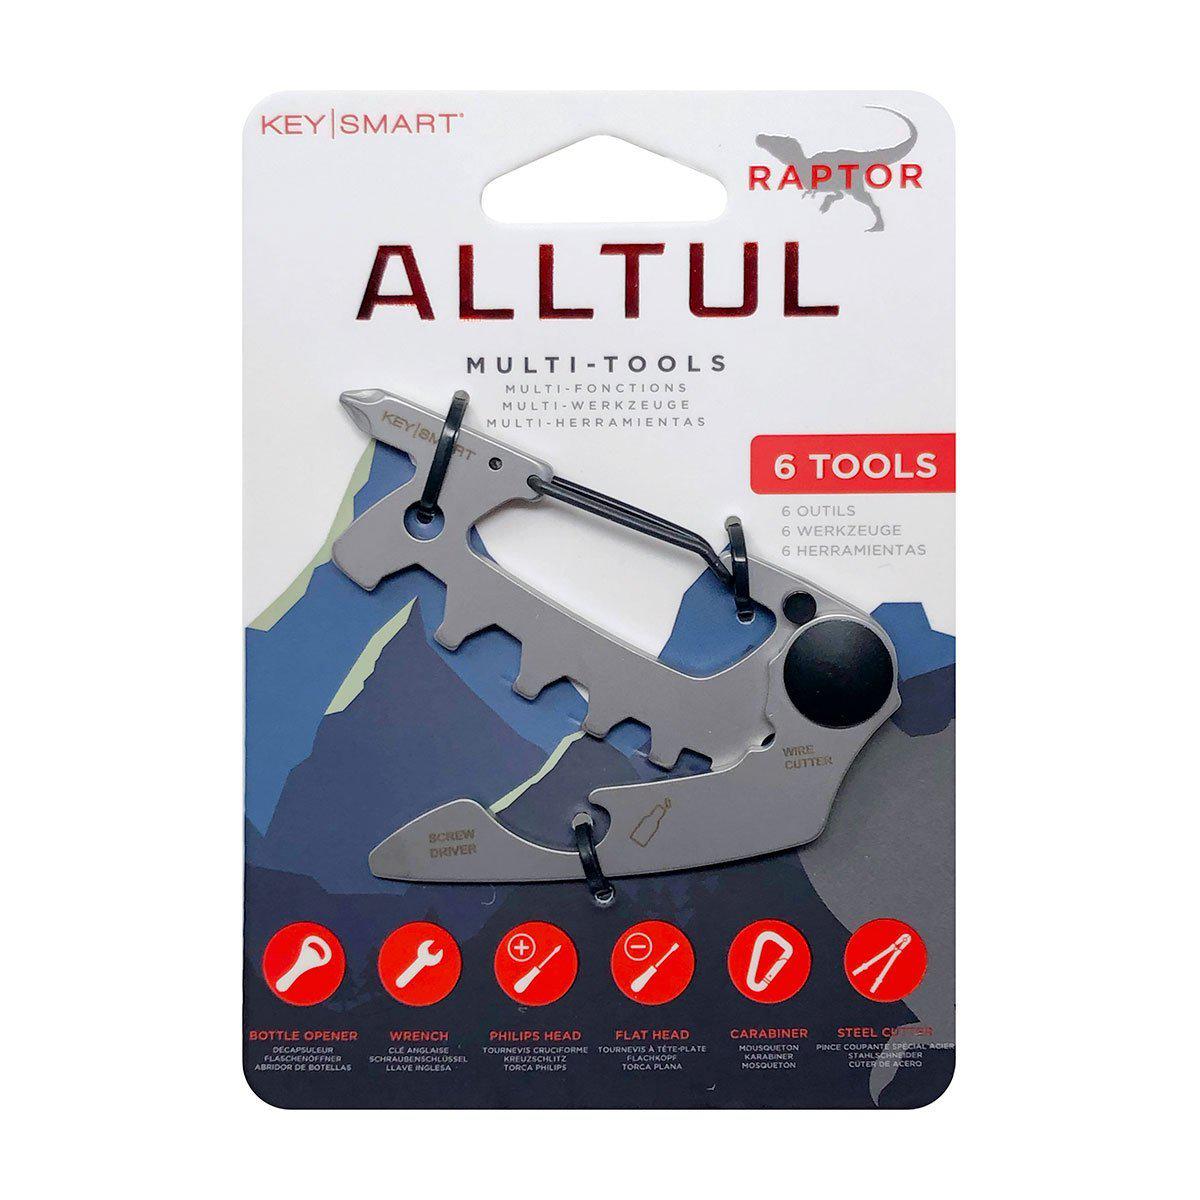 AllTul Animal Multi-tools - 3 options